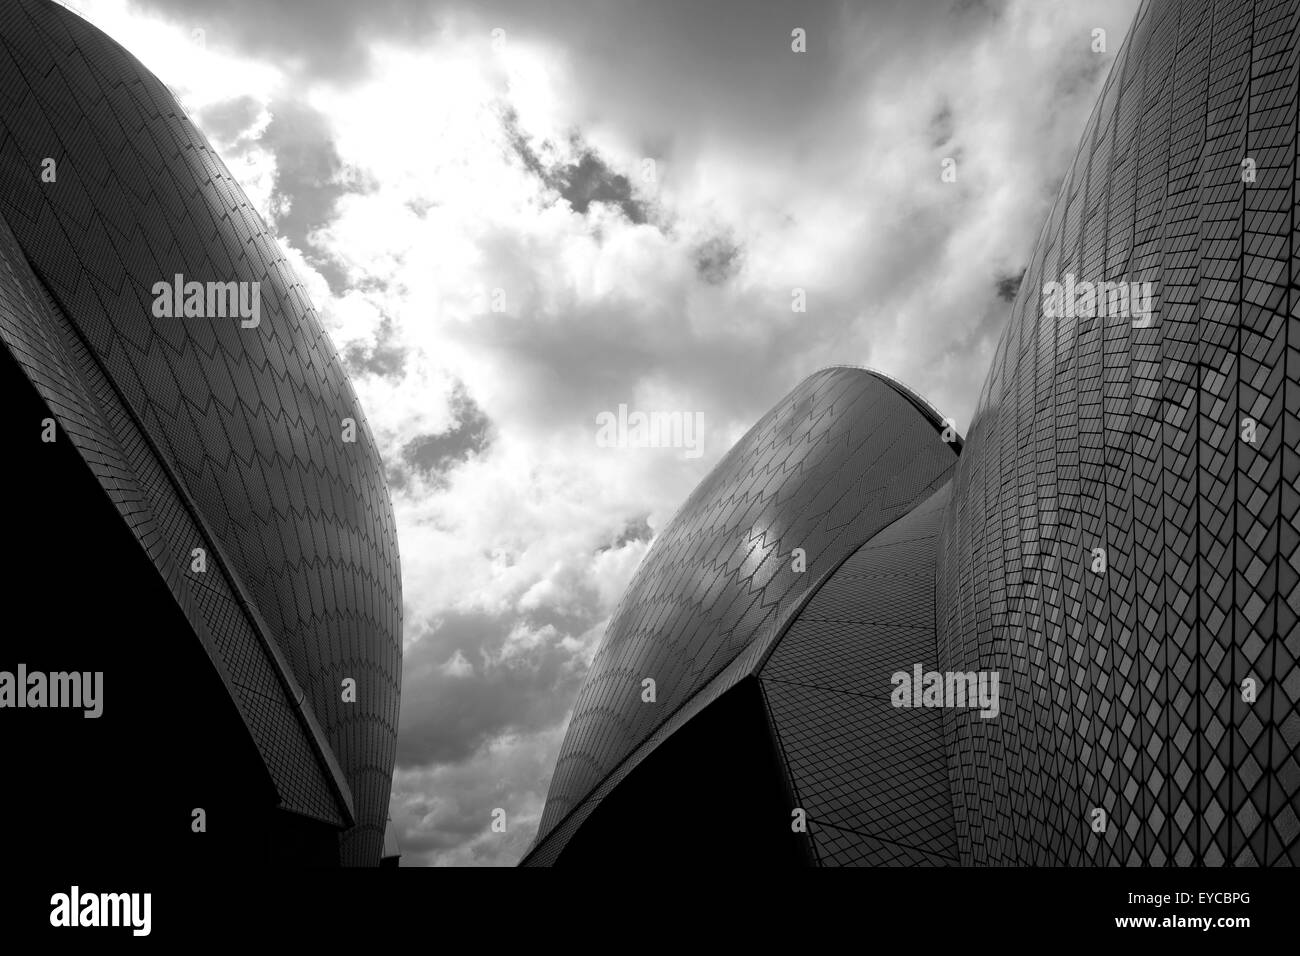 Sydney Opera House close up en noir et blanc Banque D'Images